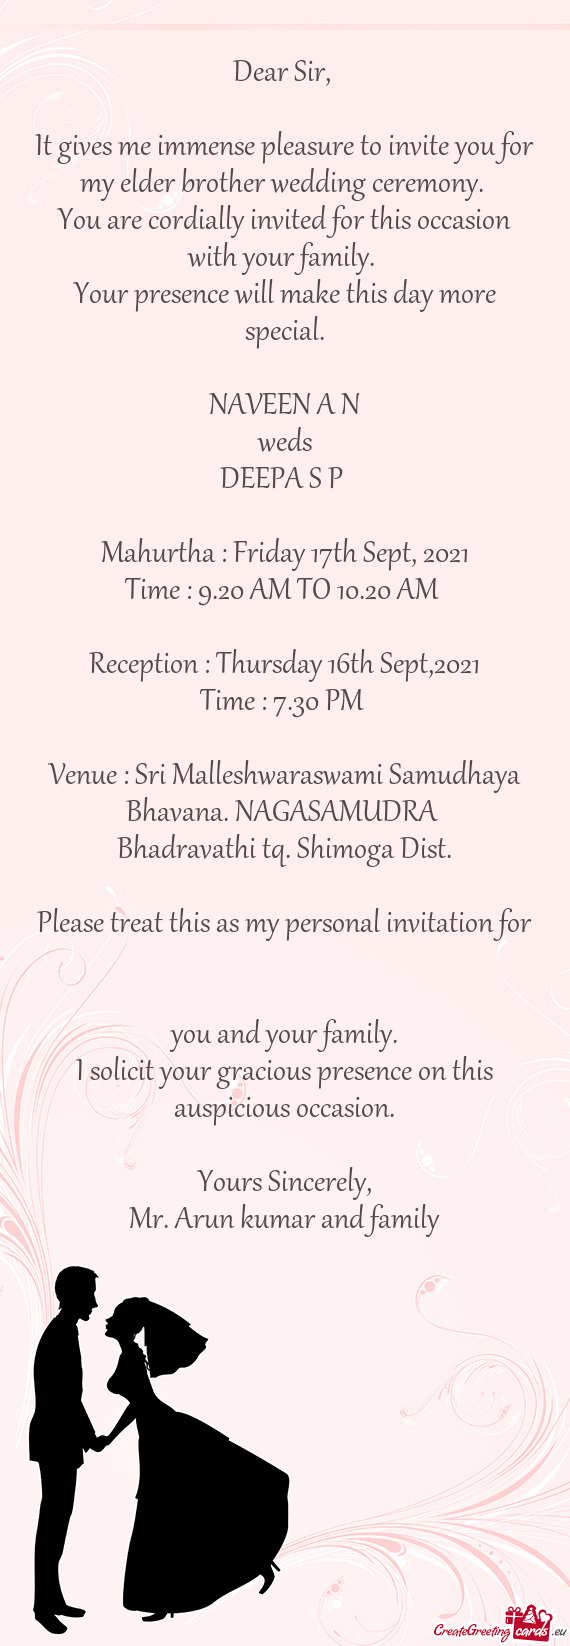 Venue : Sri Malleshwaraswami Samudhaya Bhavana. NAGASAMUDRA